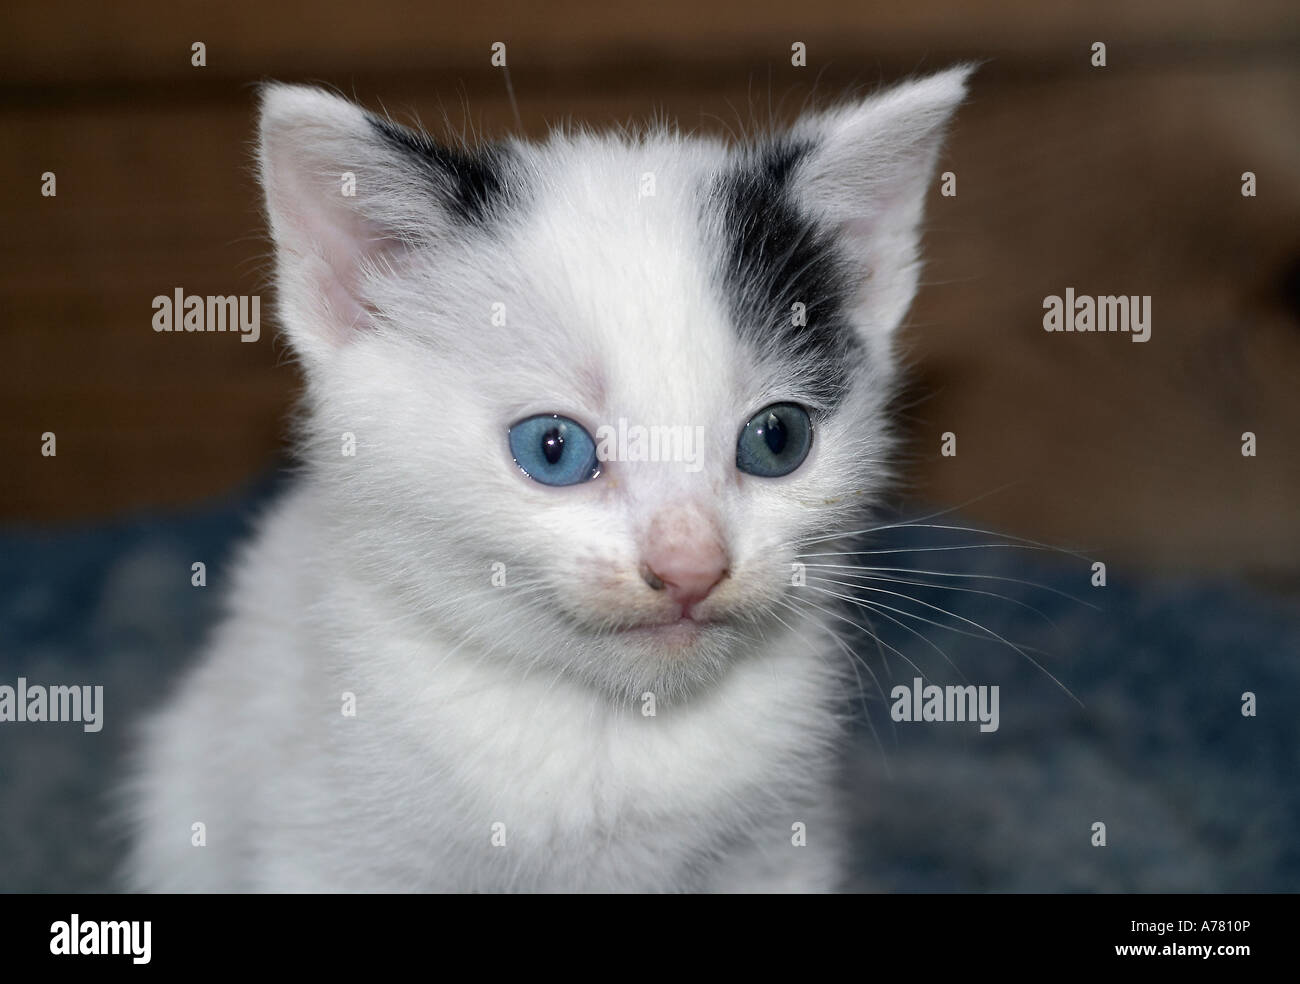 Étrange du chaton aux yeux bleus visage couvert de chats après avoir mangé Banque D'Images